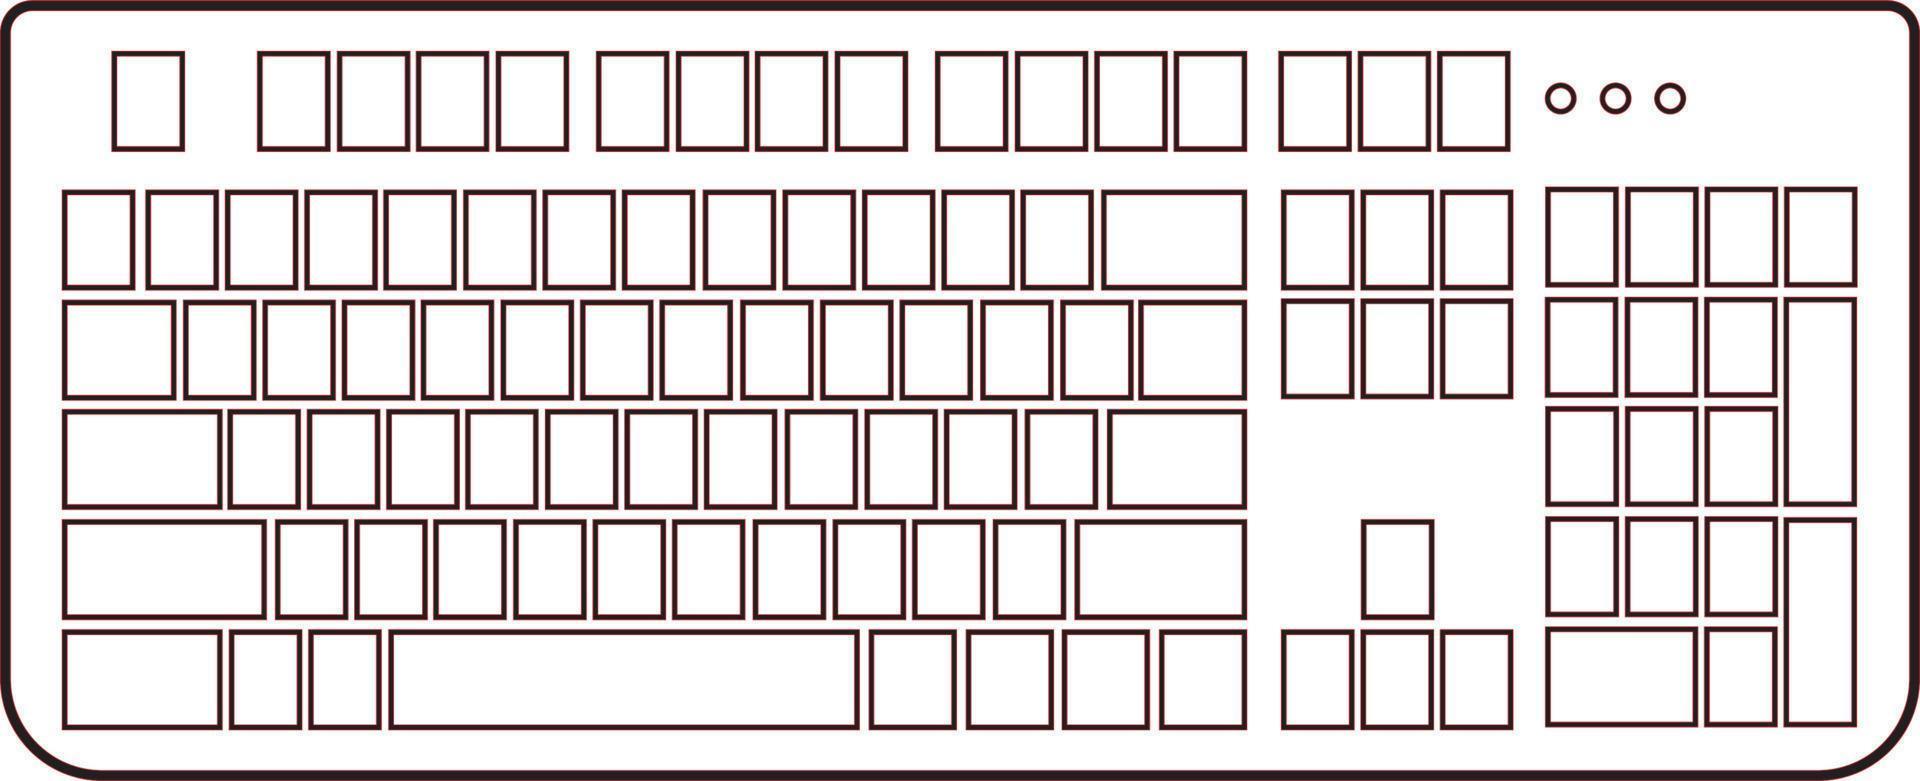 tom pc tangentbord ikon illustration kommunikation skriver skrivning elektronisk teknologi Utrustning vektor